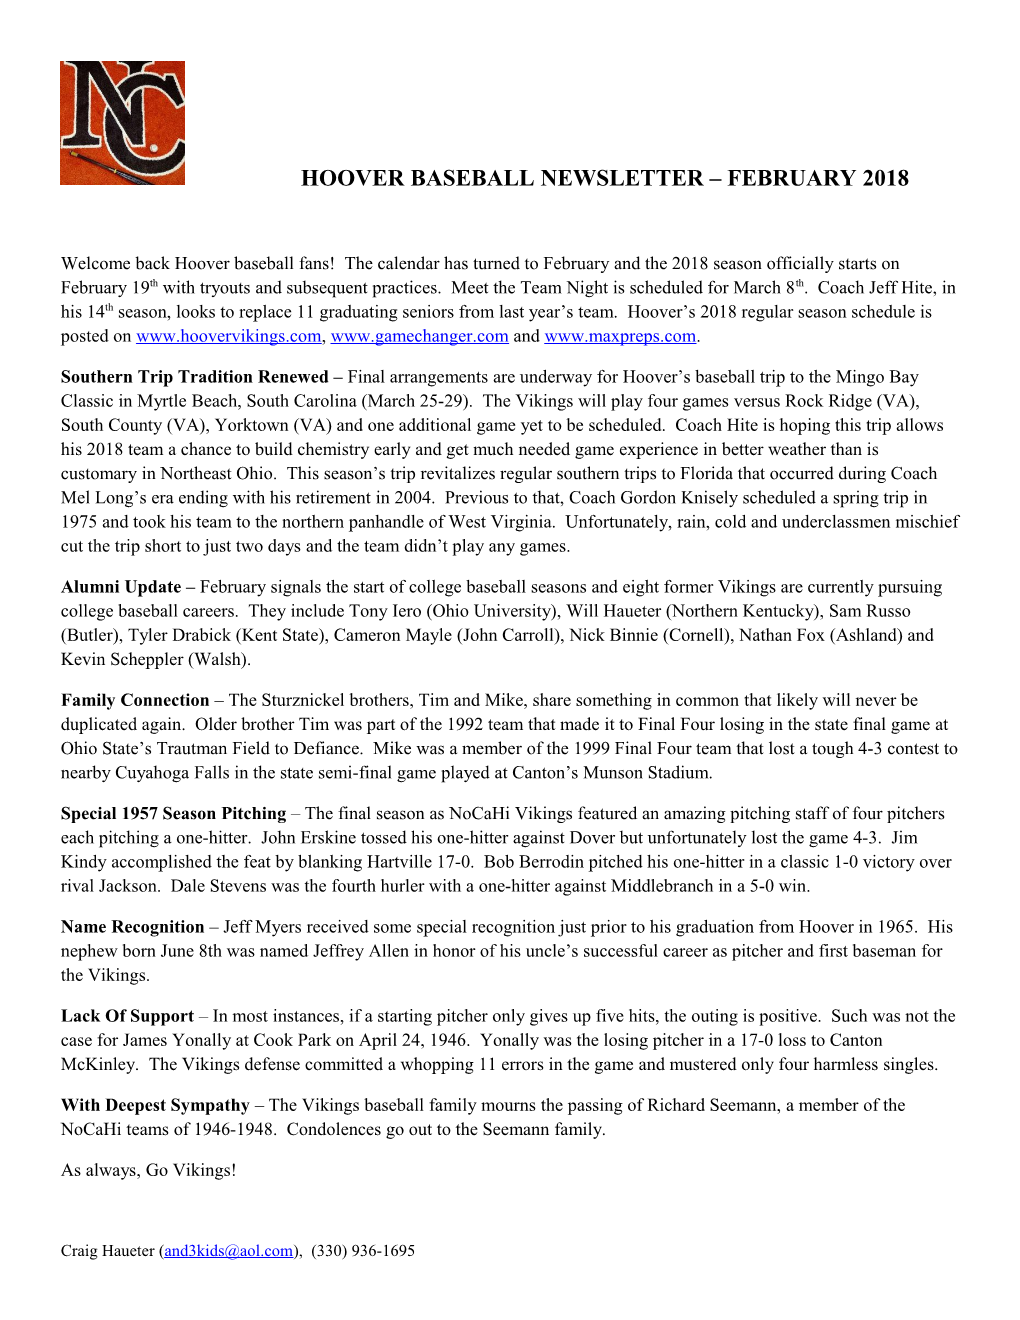 Hoover Baseball Newsletter February 2018